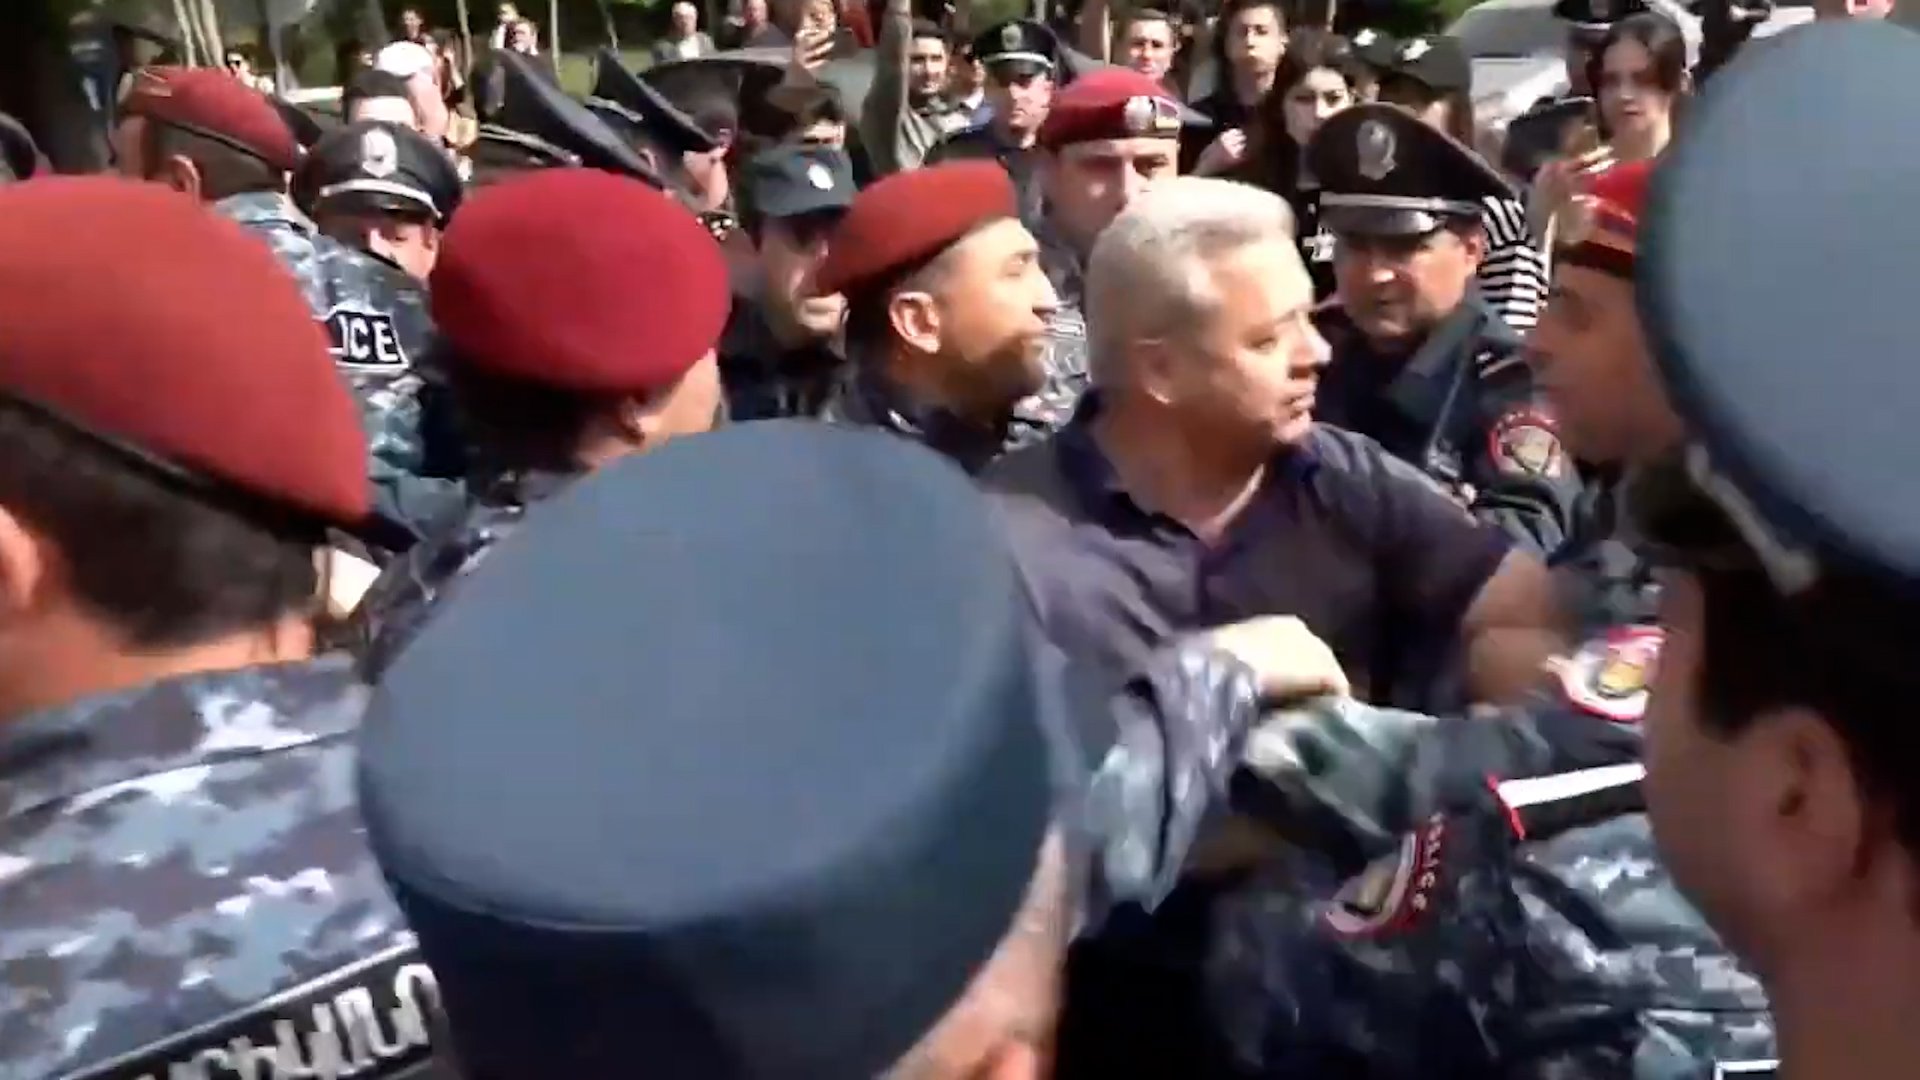 Փողոցային ակտիվիստ դարձած ոստիկանության գնդապետ Սայաթ Շիրինյանին ոստիկանները բերման ենթարկեցին Աբովյան փողոցից. տեսանյութ